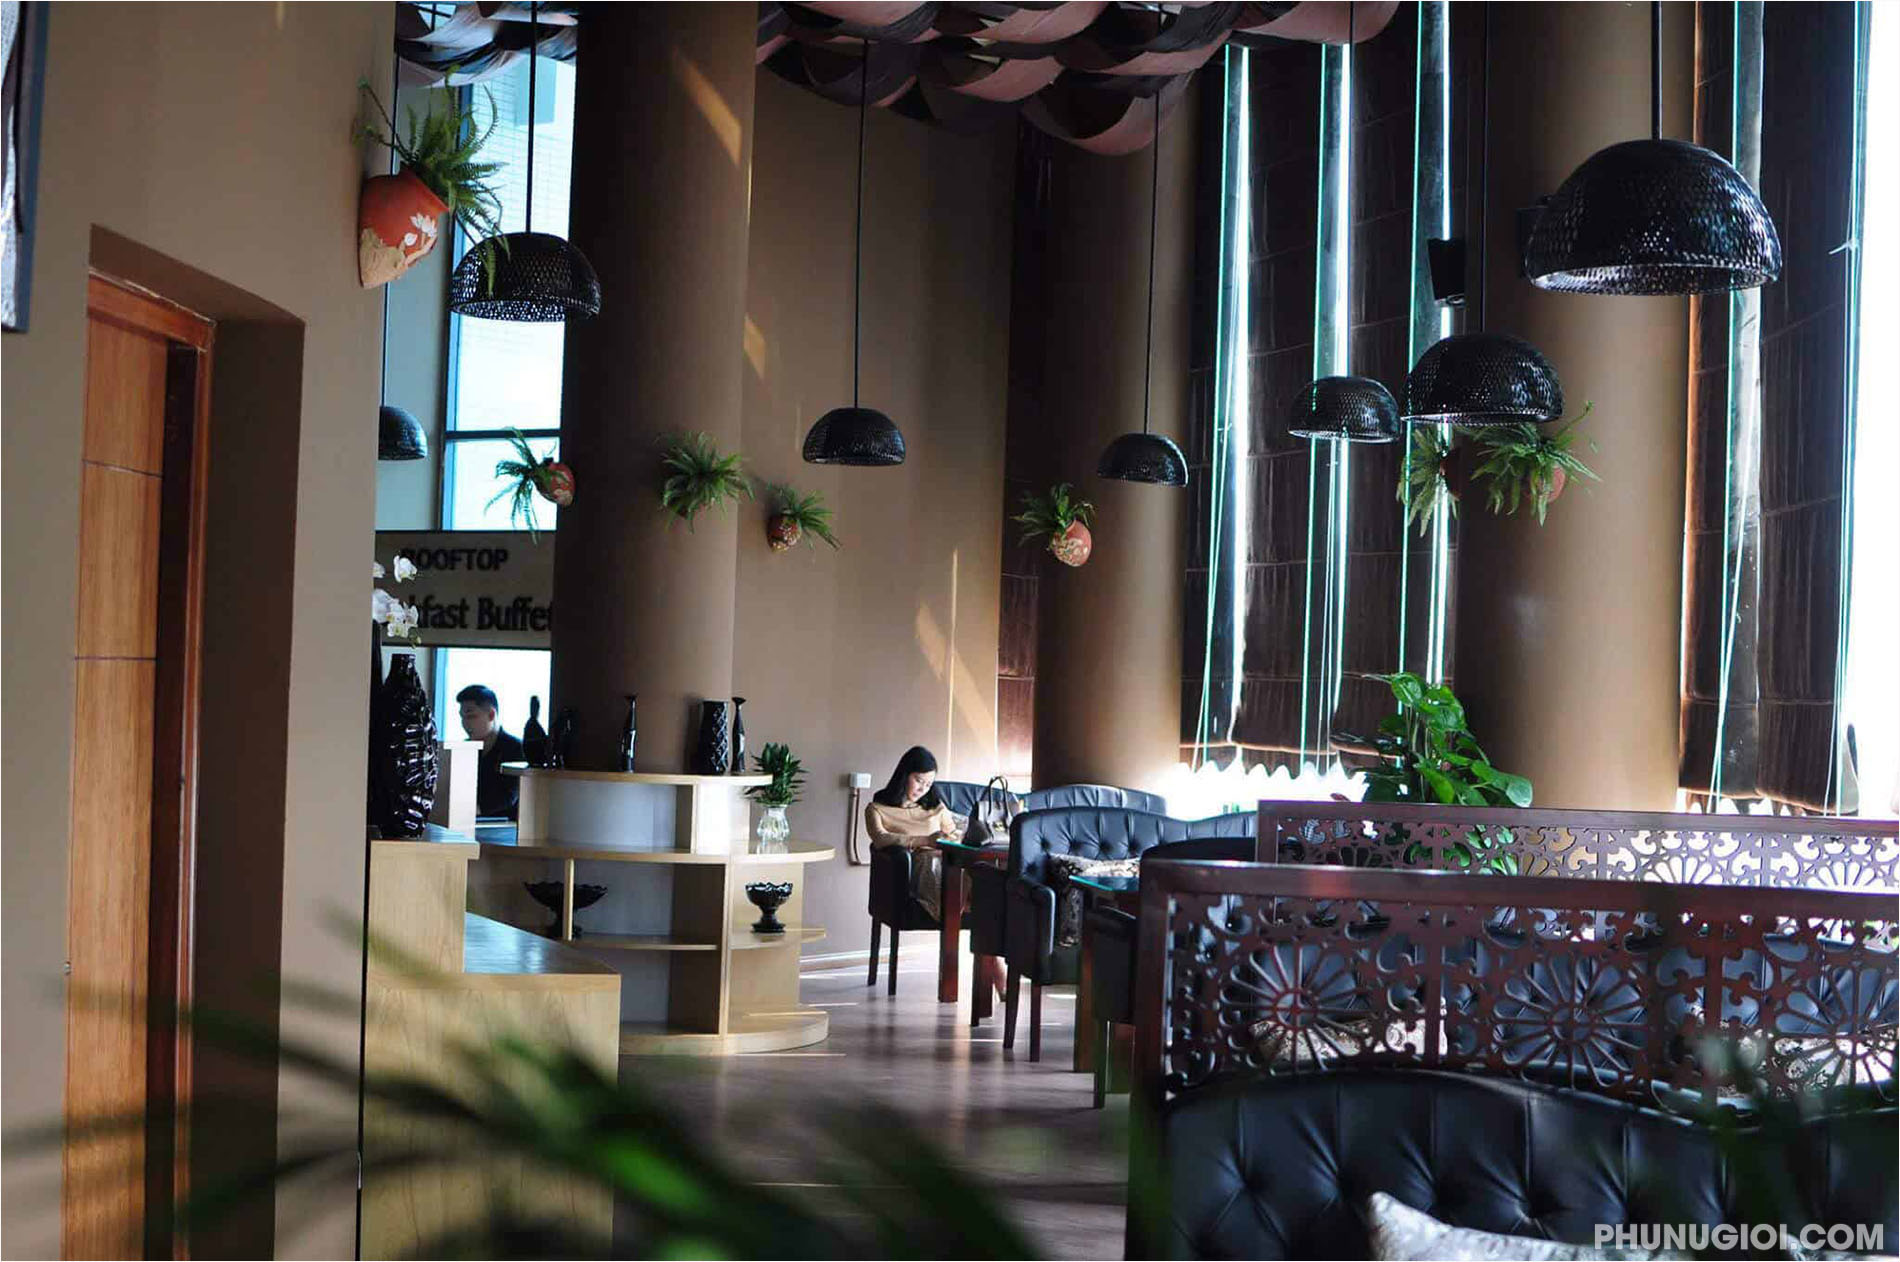 Nếu bạn đang tìm kiếm một quán cafe thân thiện và dễ chịu để tận hưởng một ly cà phê chất lượng, đừng bỏ qua chiếc ảnh Chill Cafe này. Với không gian trang nhã và sự tinh tế trong thiết kế, quán cafe này đem đến cho bạn một trải nghiệm thú vị và tuyệt vời.